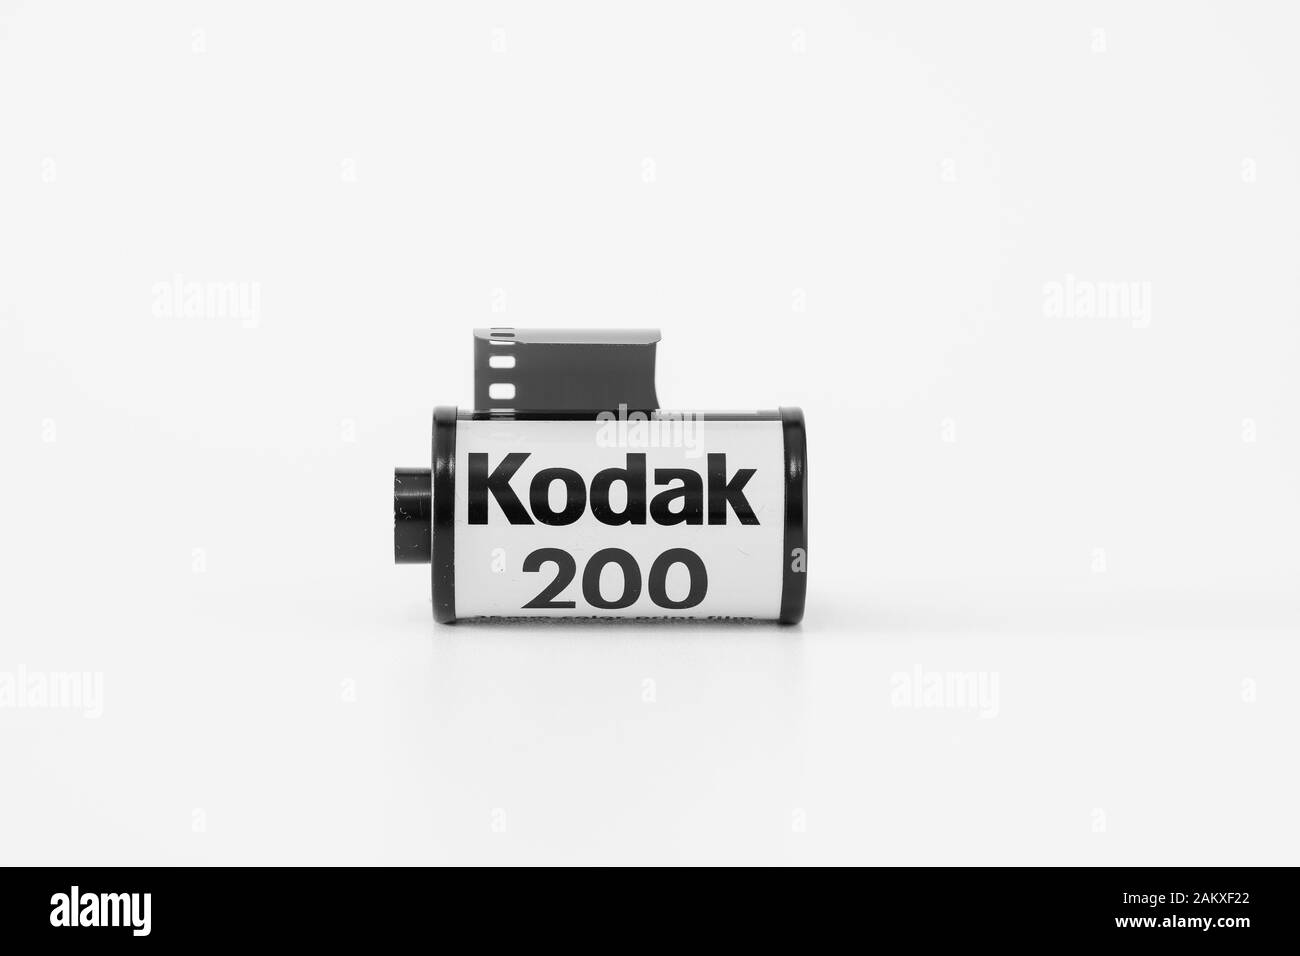 Didascalia immagine una pellicola fotografica a colori, con marchio Kodak Iso200, immagine in bianco e nero. Foto Stock